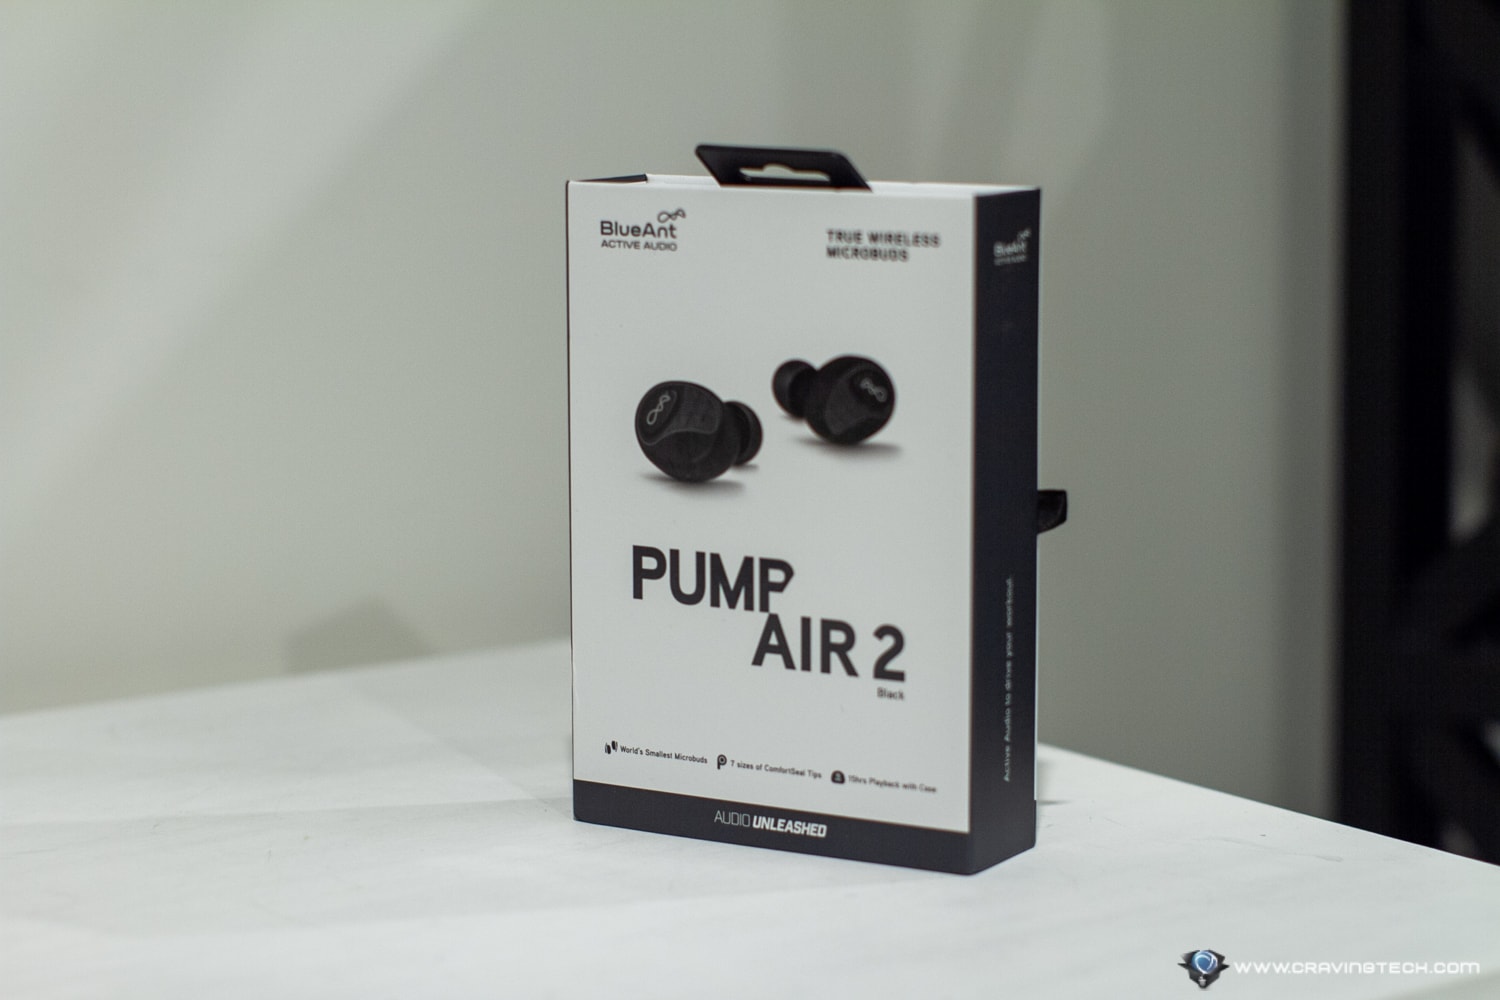 BlueAnt Pump Air 2 Packaging